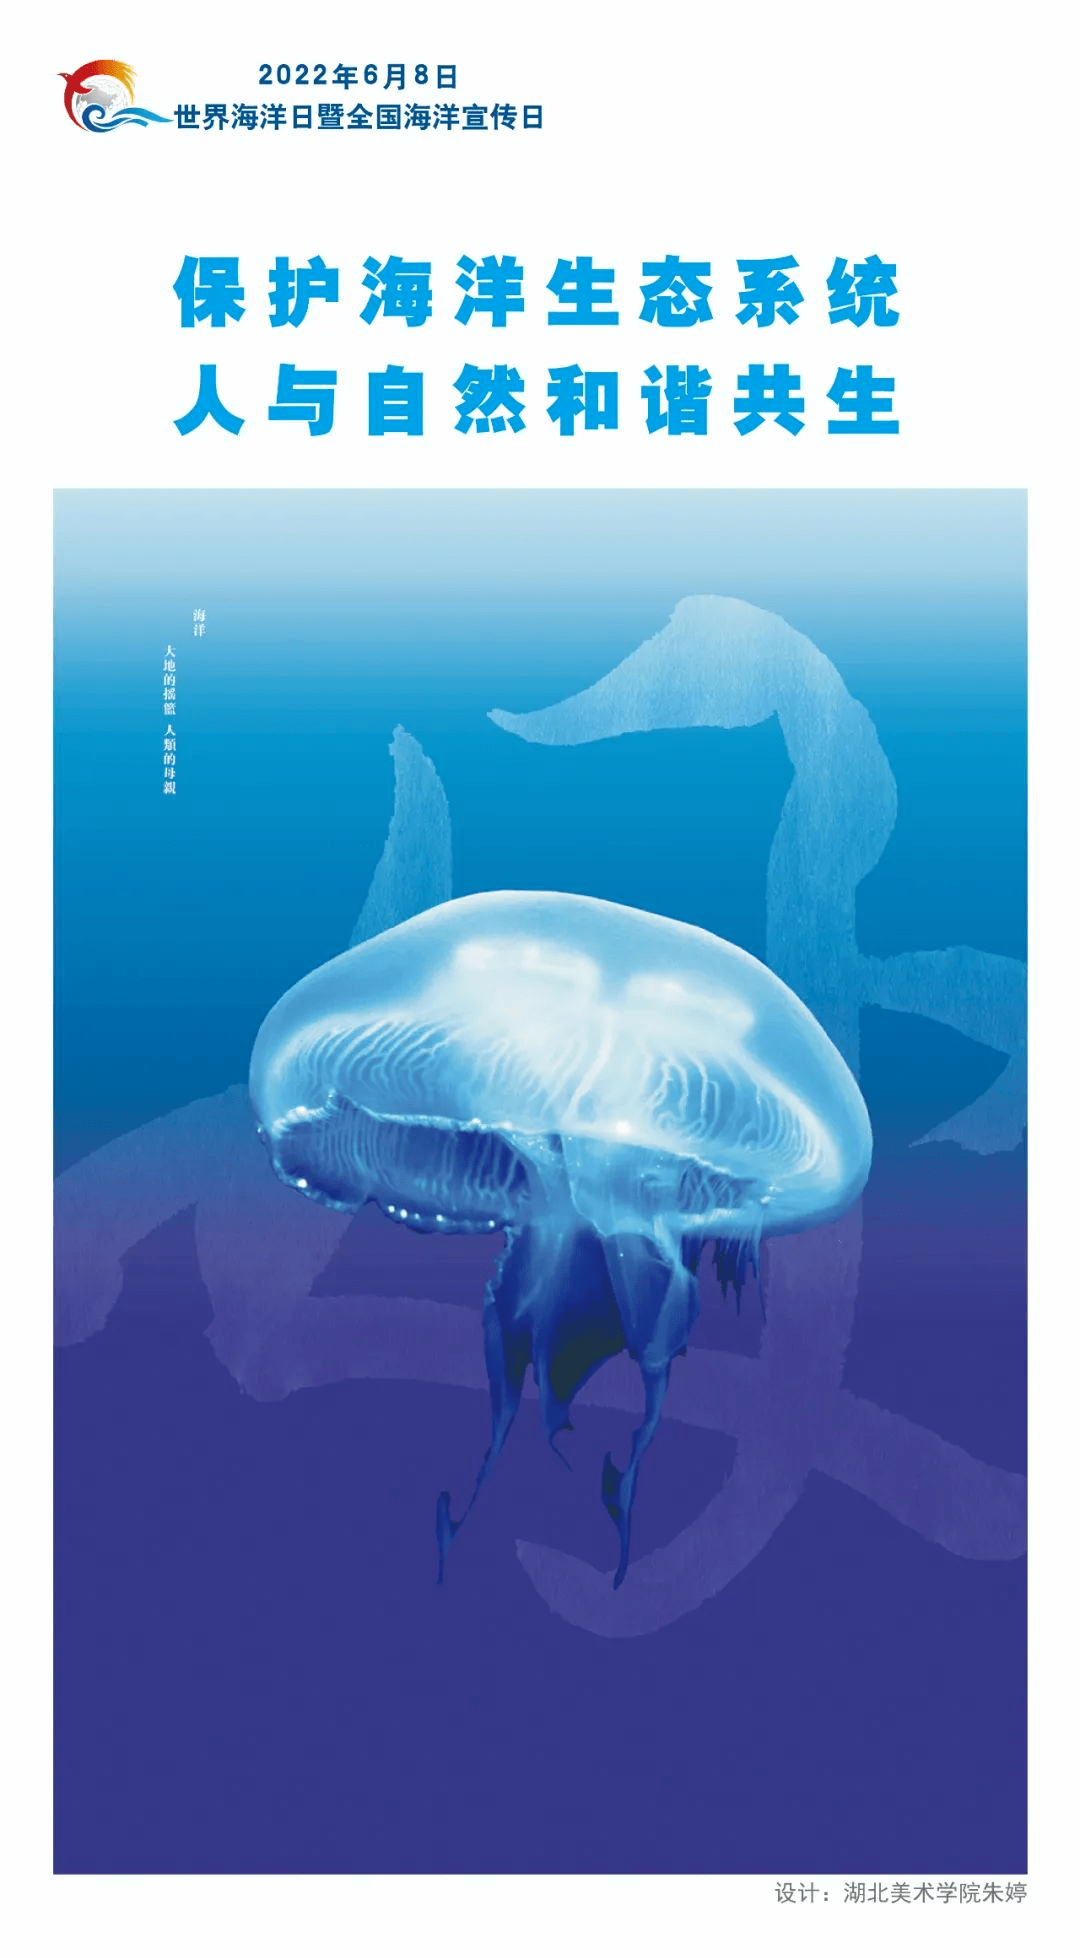 海洋日创意海报来了